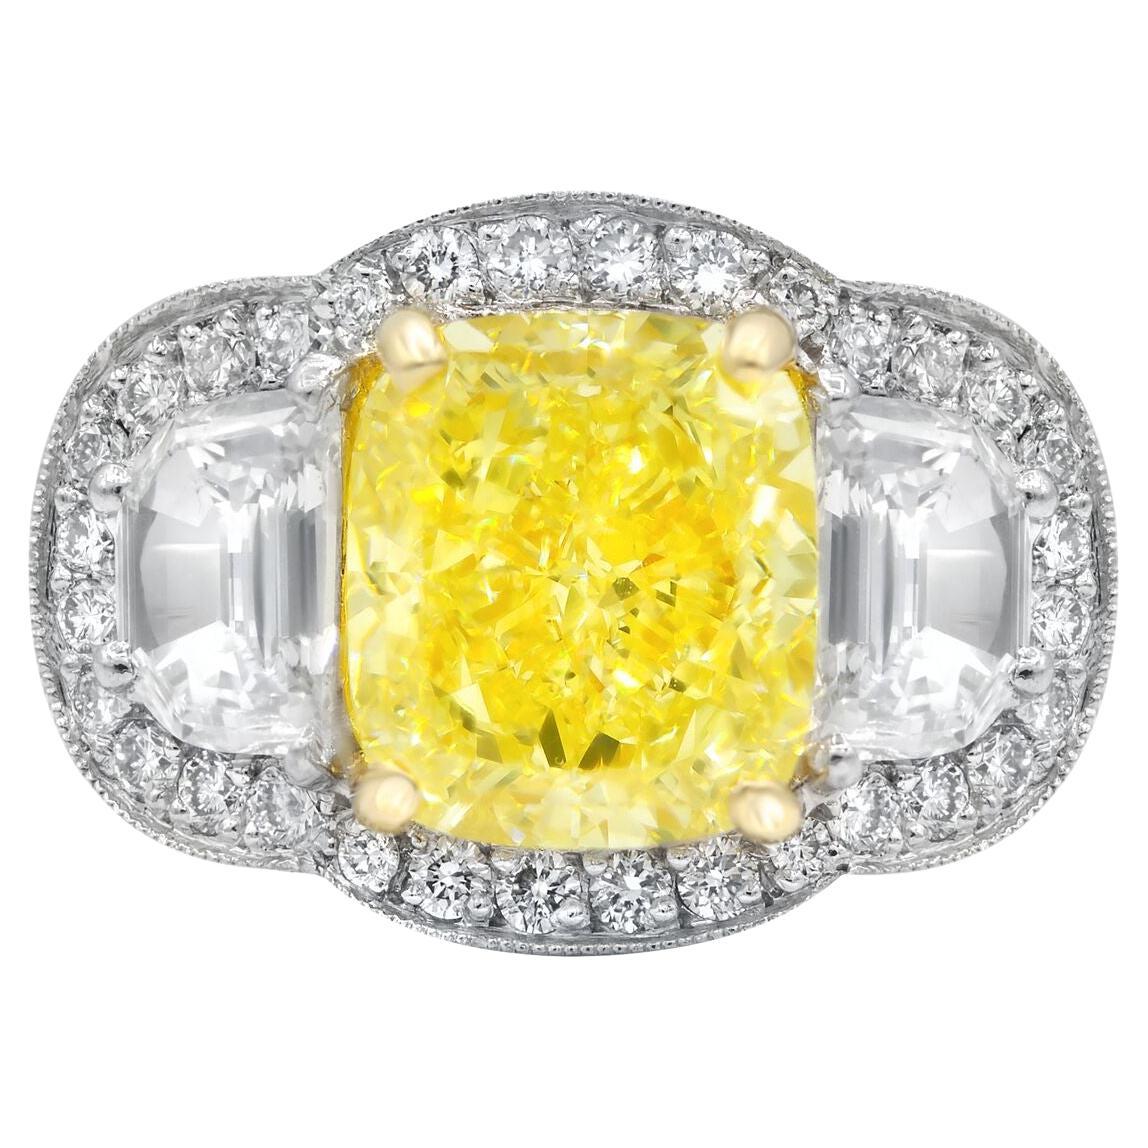 Diamantring aus Platin und 18-karätigem Gelbgold mit einem gelben Diamanten im Kissenschliff (FY VS1) von 5,23 Karat in der Mitte und 2 halbmondförmigen Diamanten an den Seiten, umgeben von weißen Diamanten von 1,90 Karat. 

Diana M ist eine